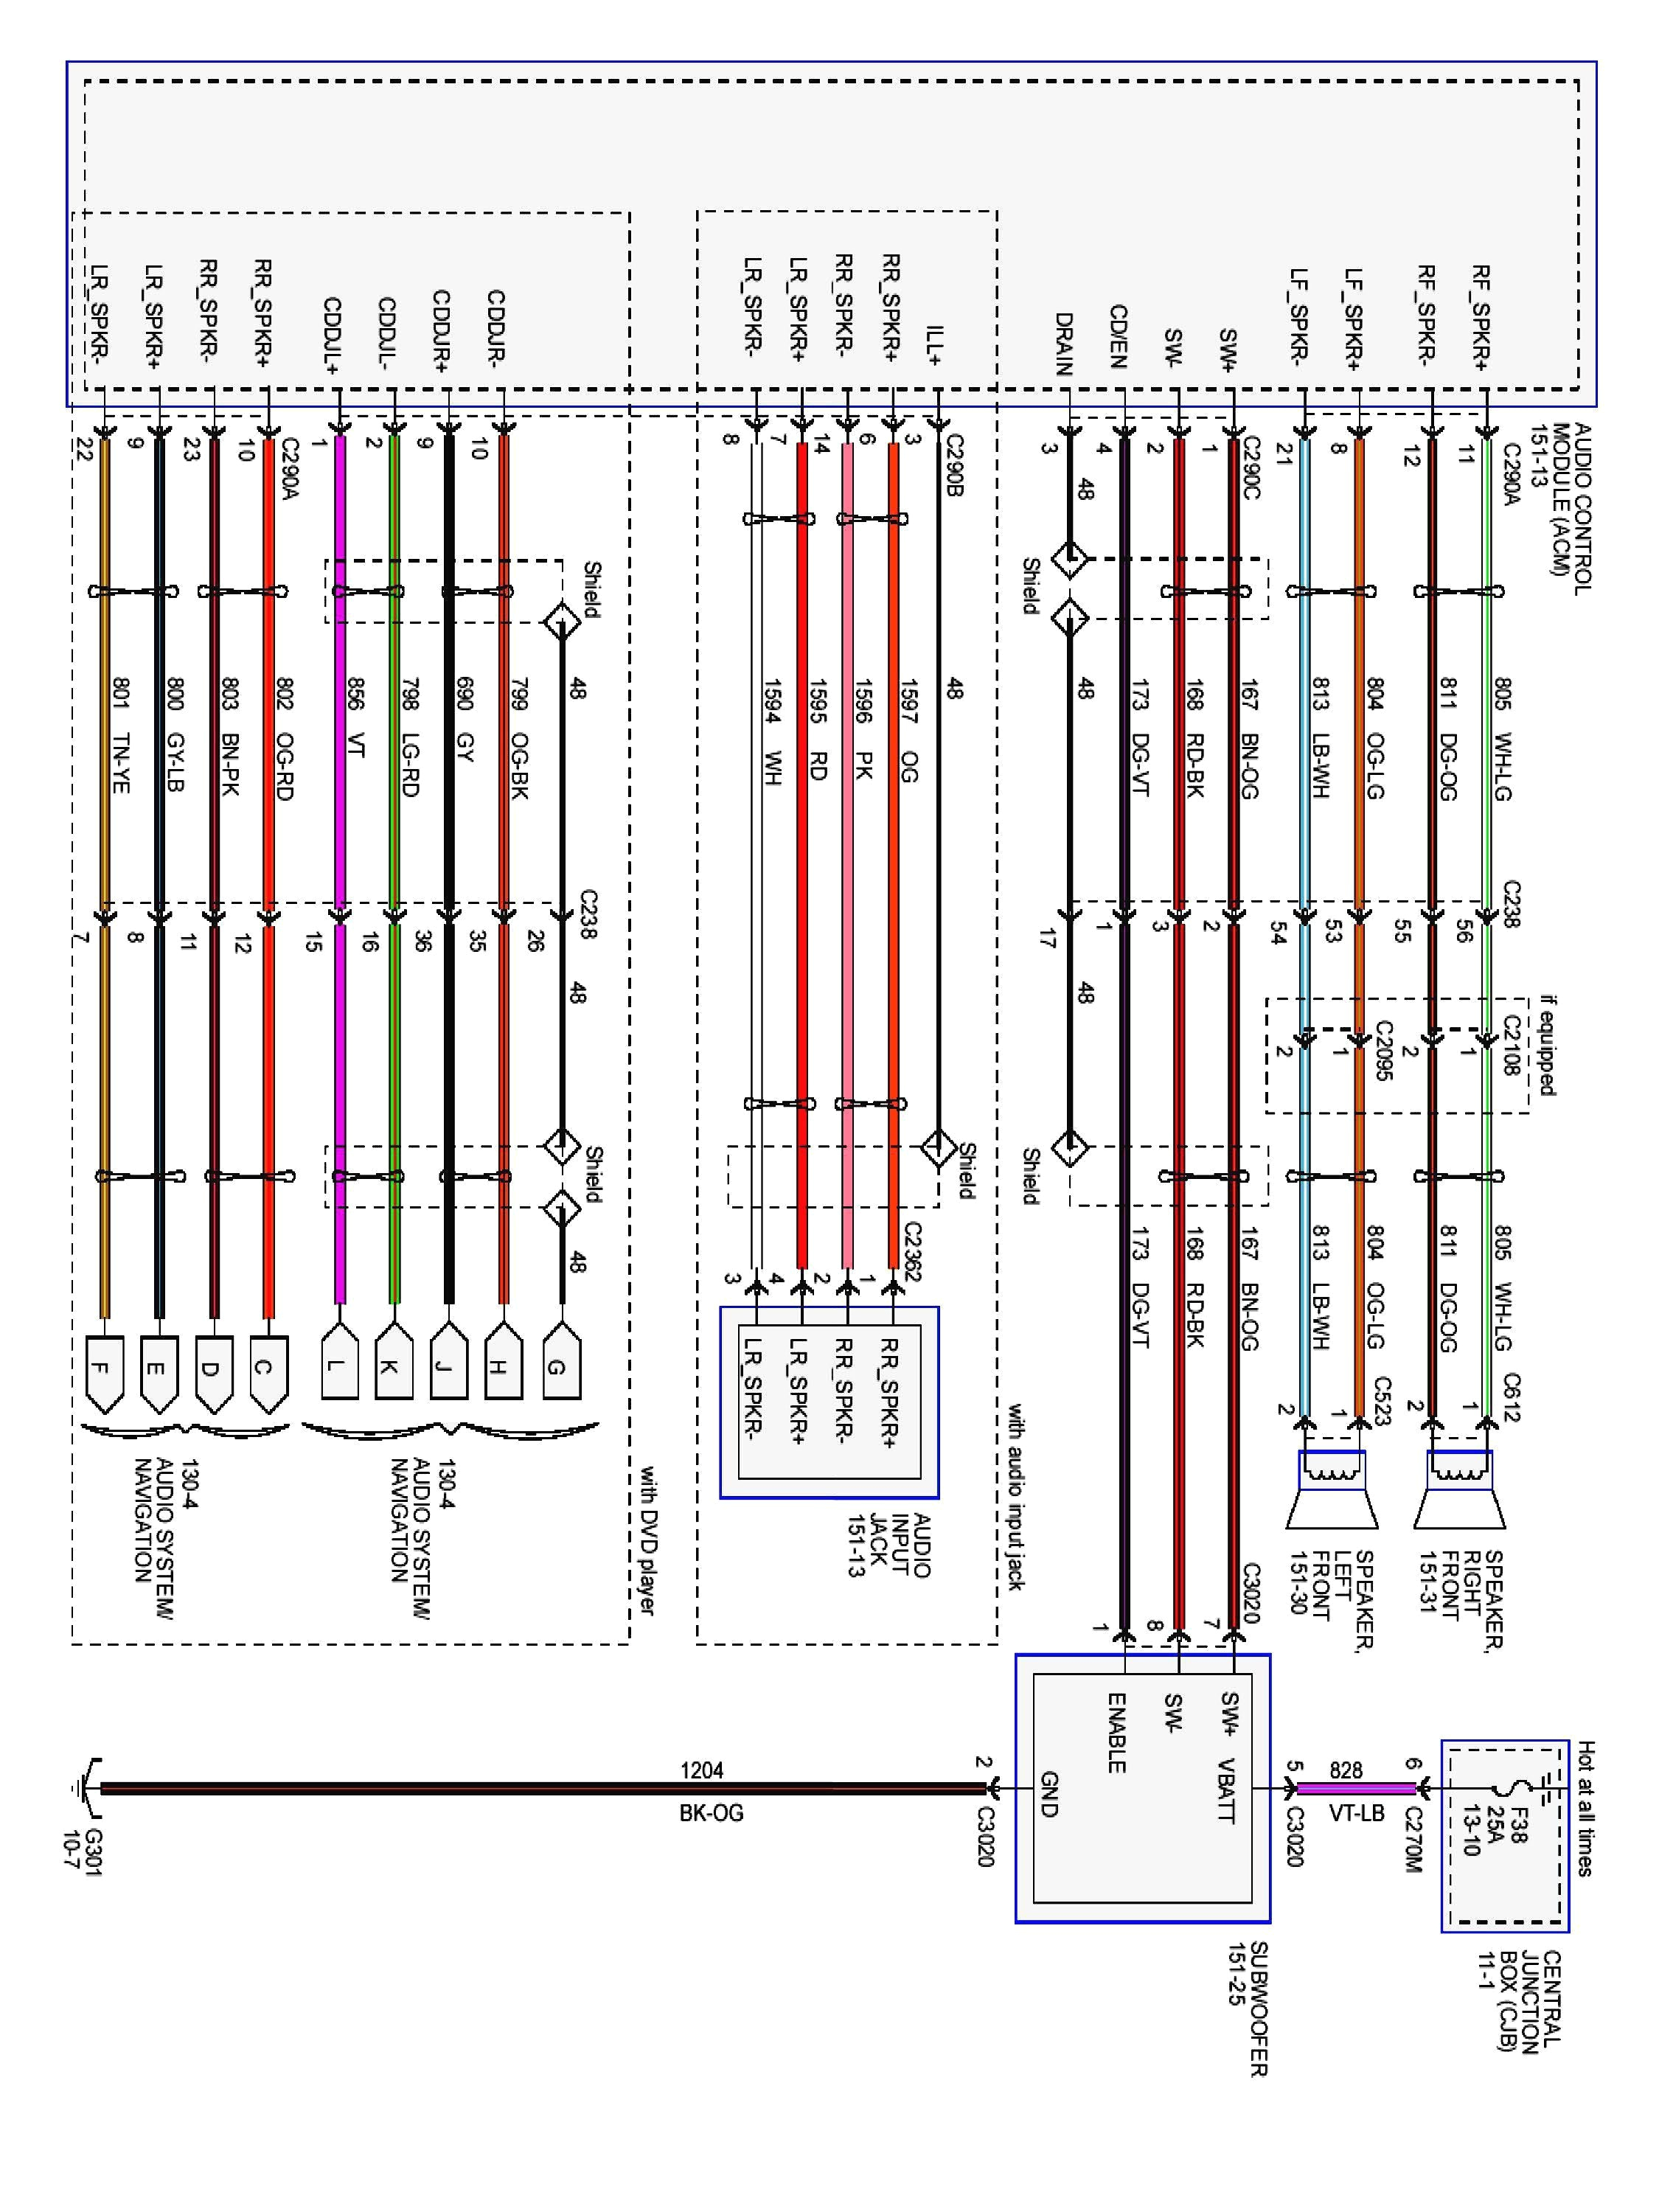 2000 ford f150 radio wiring diagram luxury 79 ford fuel system